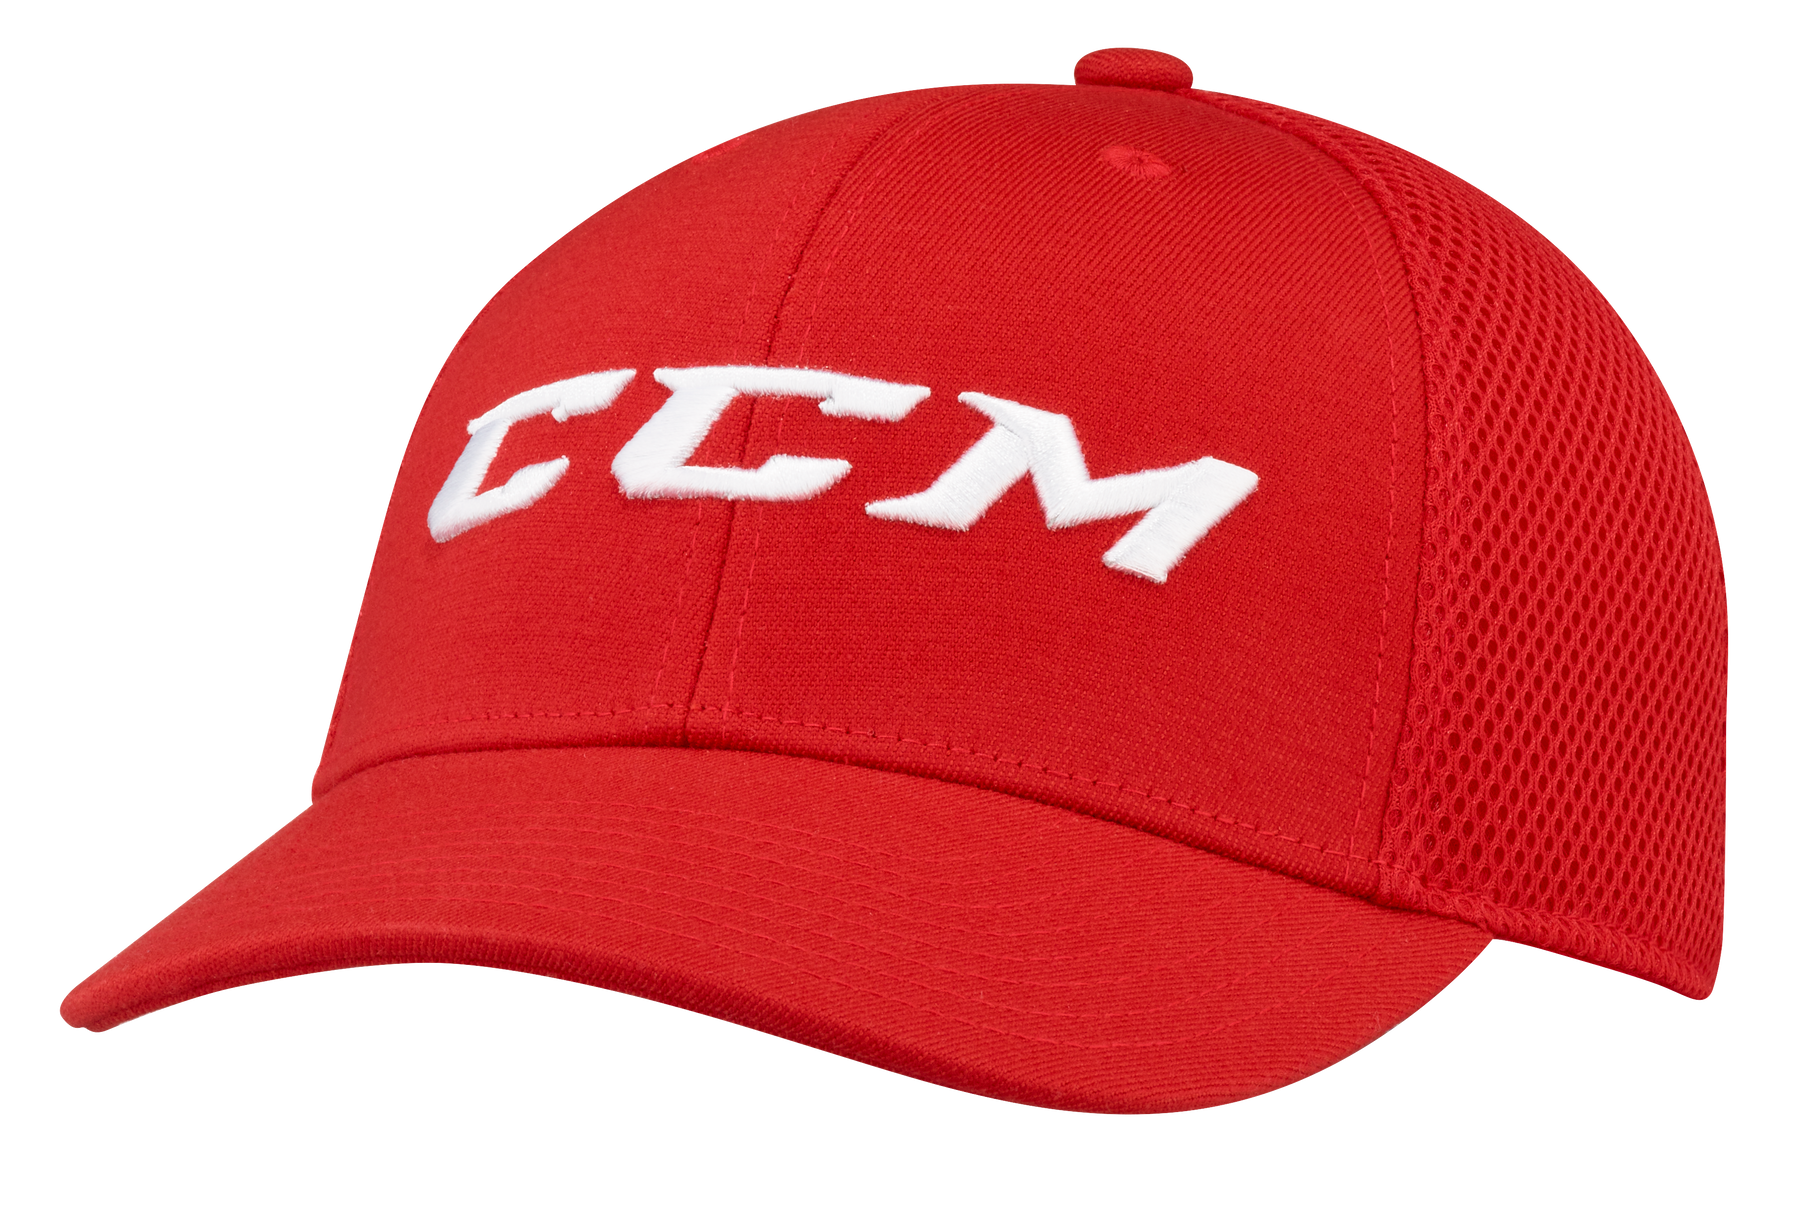 CCM casquette style camionneur core adulte –